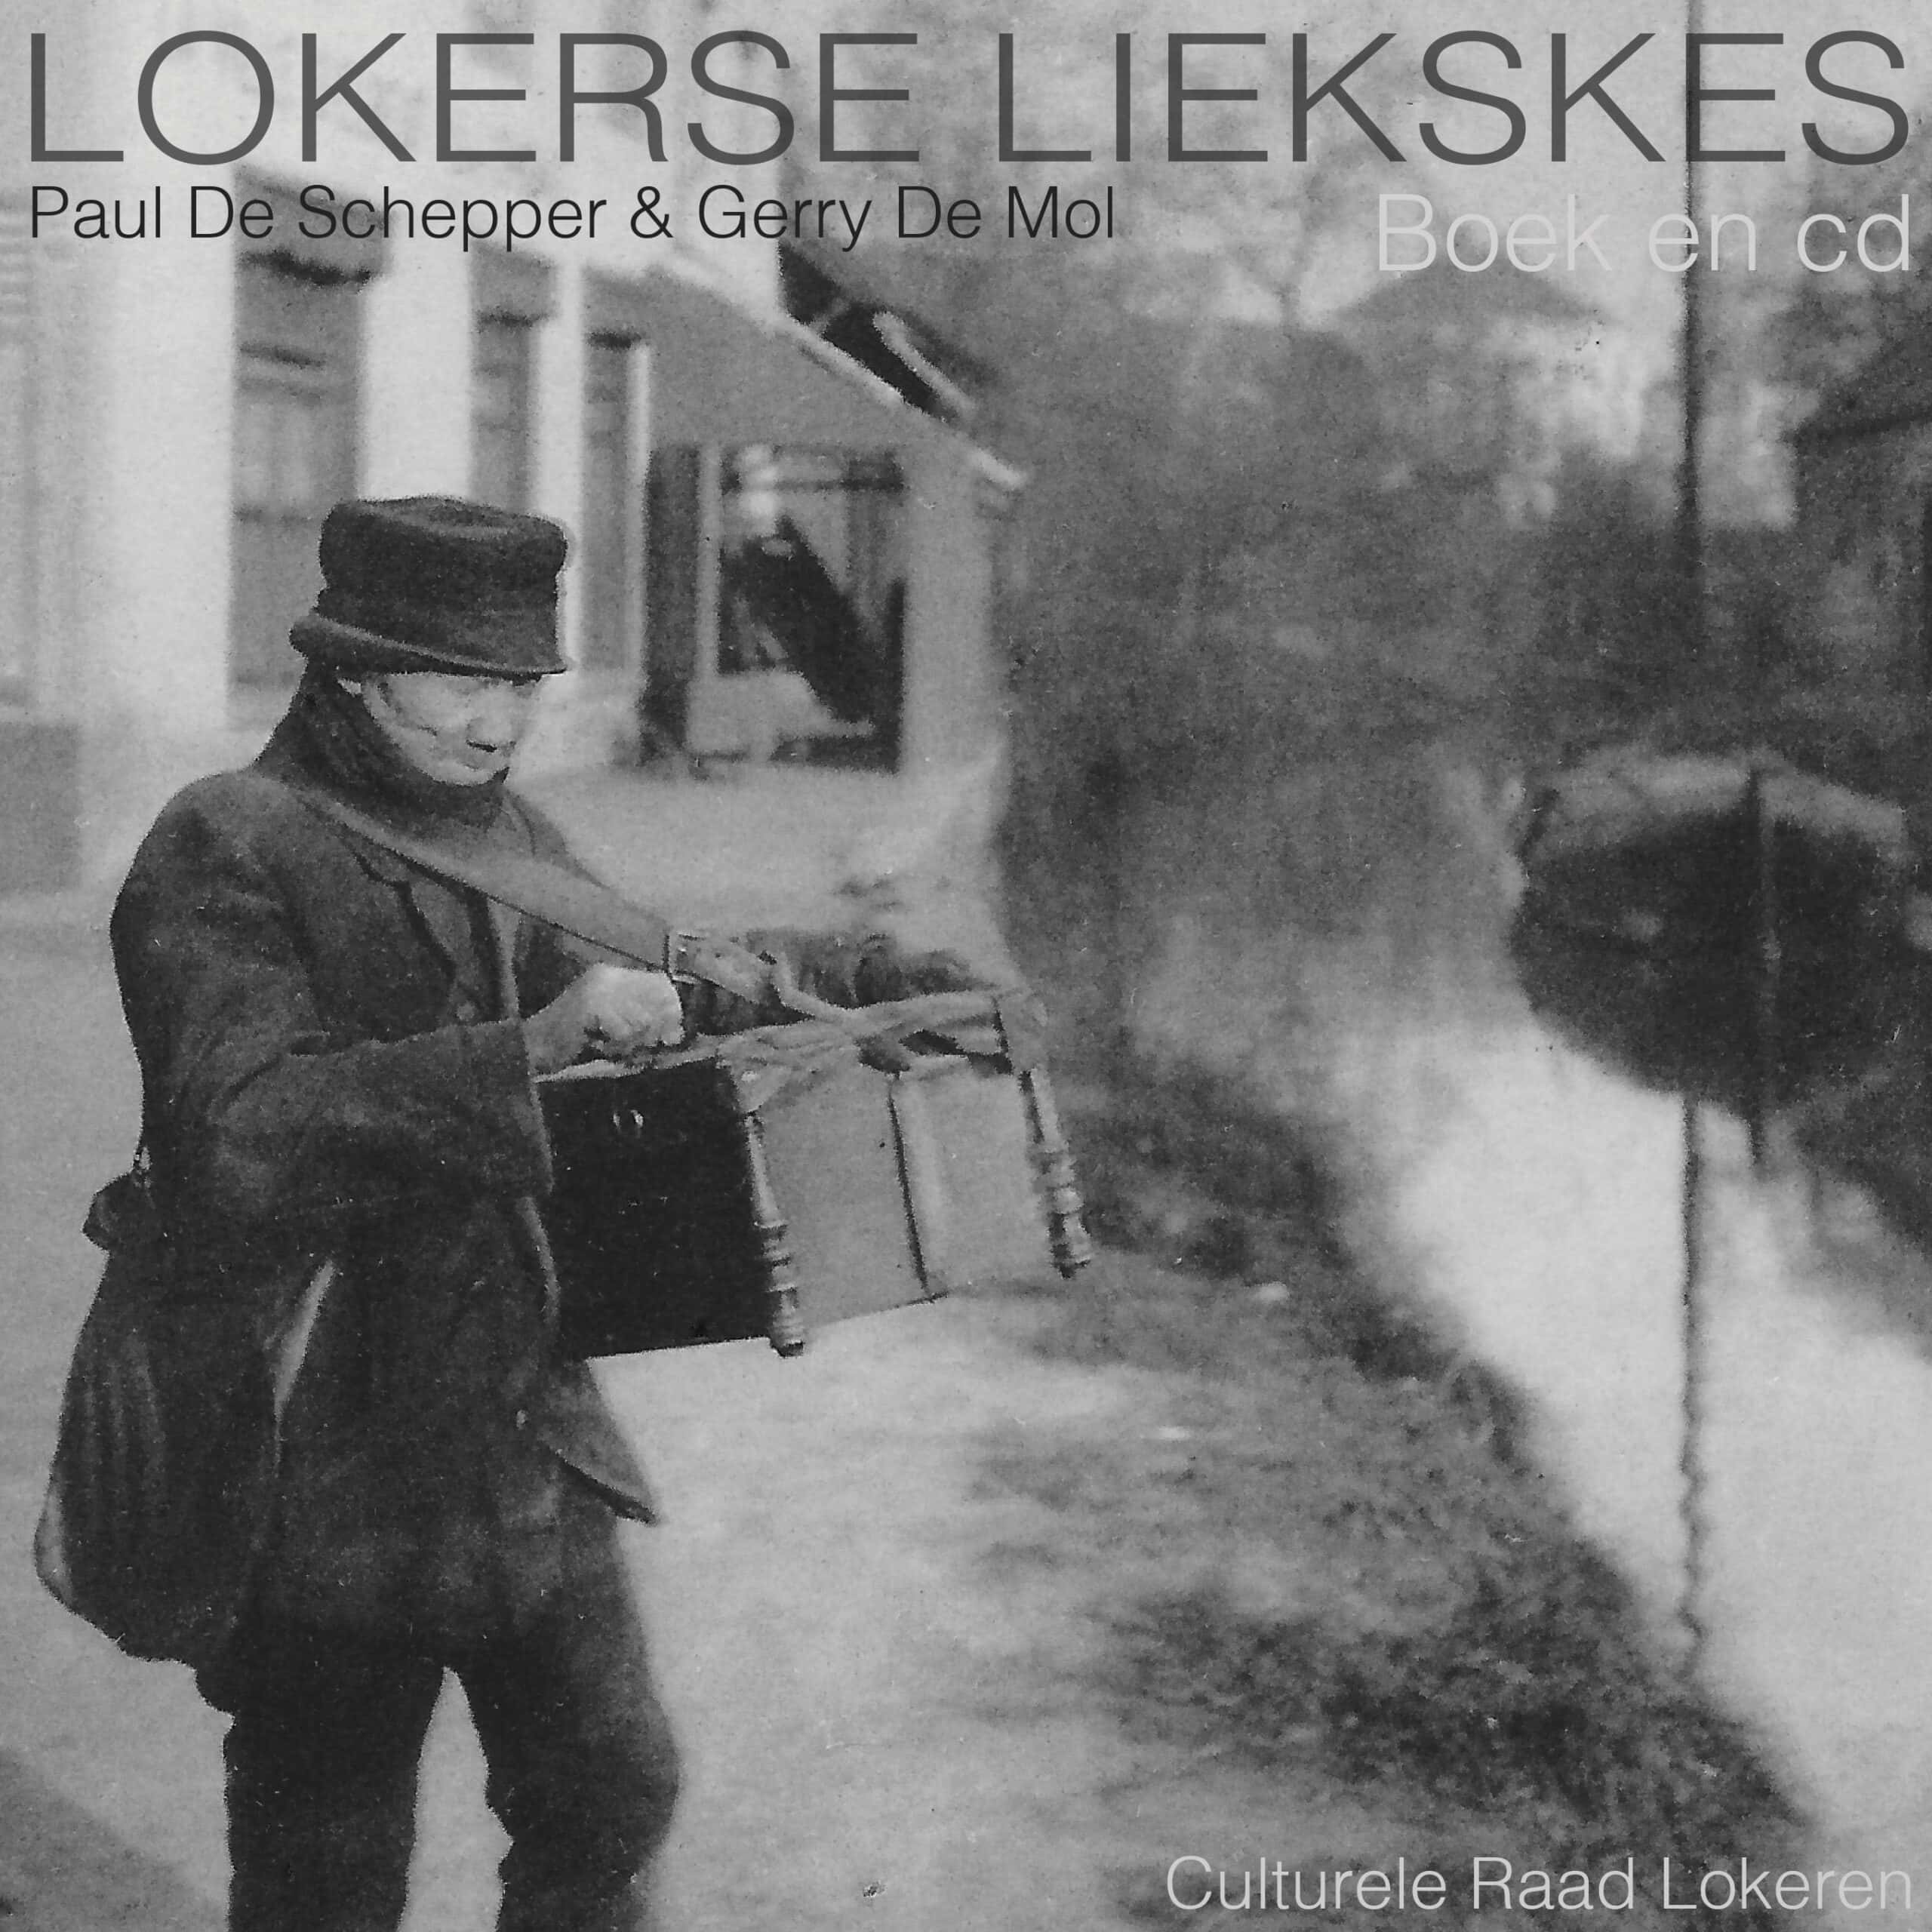 Lokerse Liekskes boek met cd - Jean. Lokeren